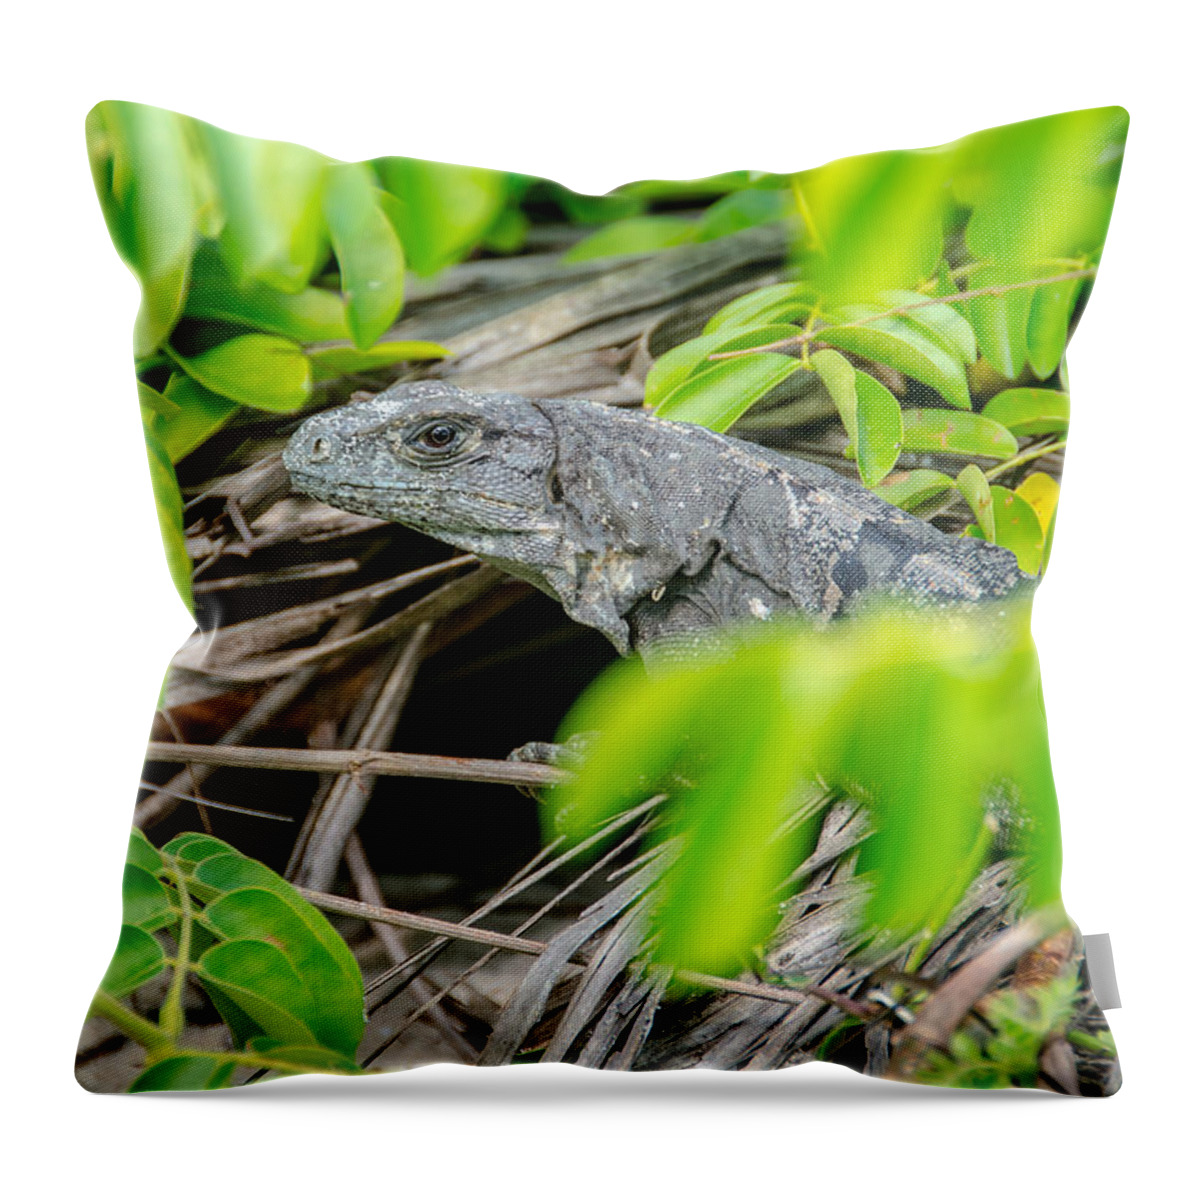 Cheryl Baxter Photography Throw Pillow featuring the photograph Peek a boo Iguana by Cheryl Baxter